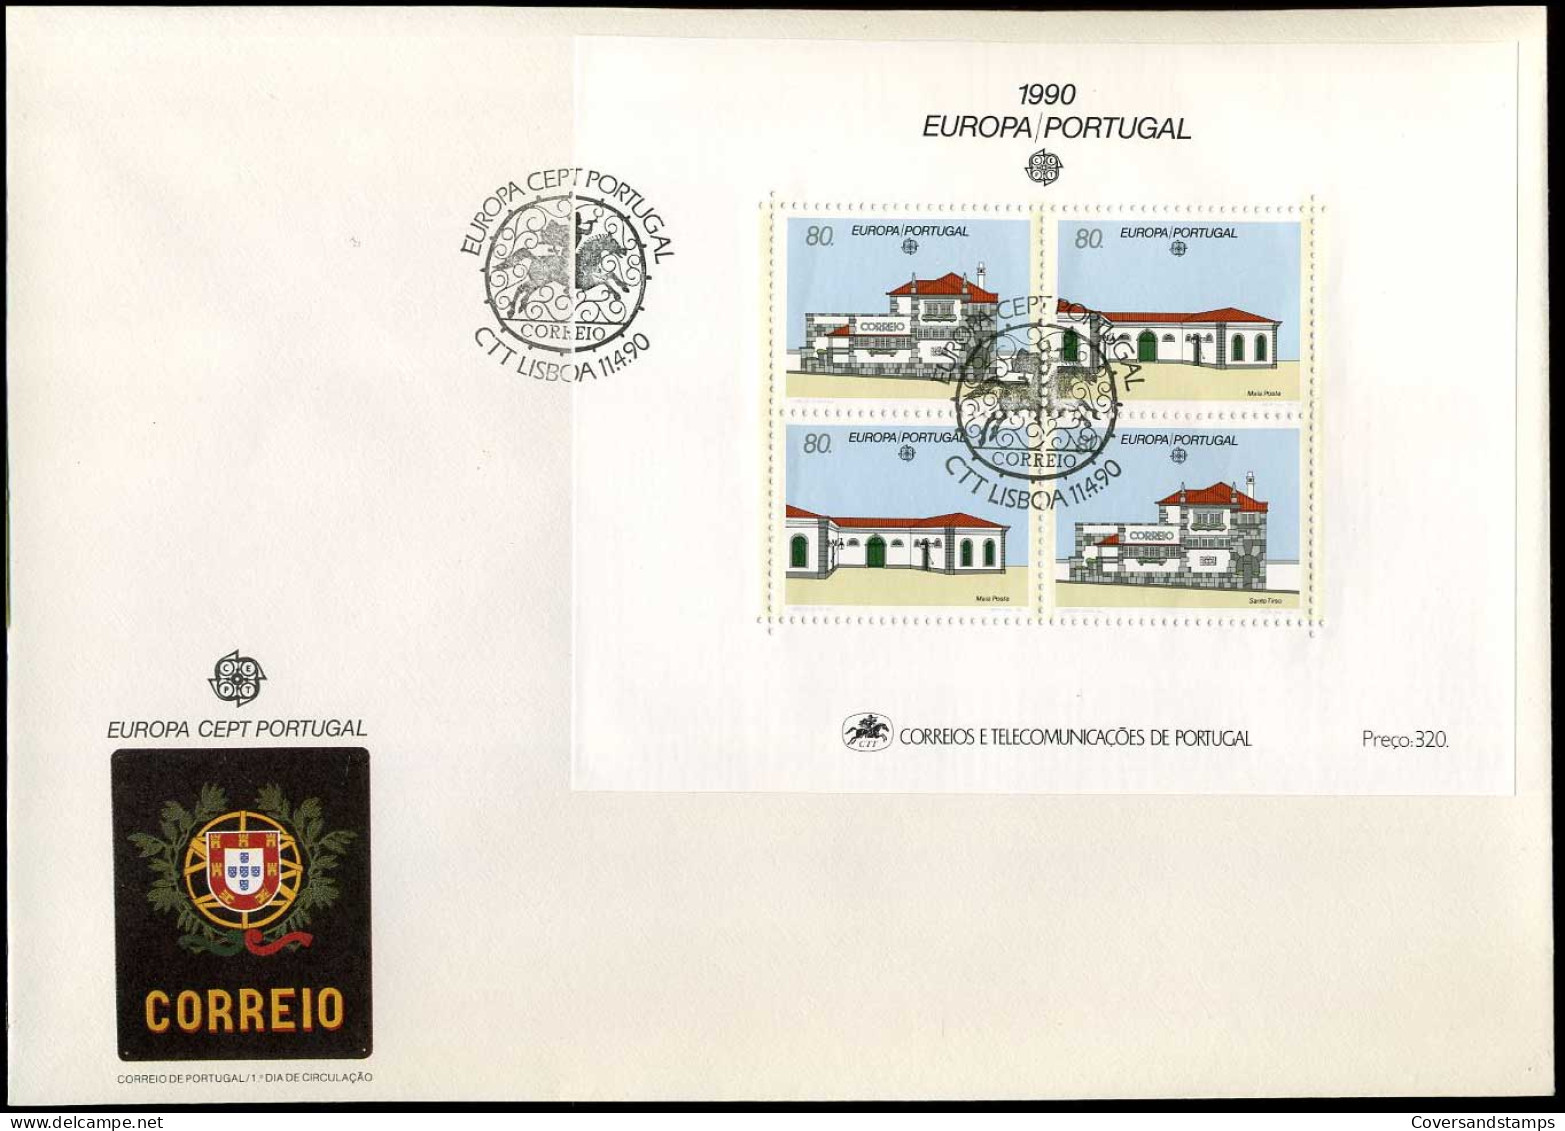 Portugal - FDC - Europa CEPT 1990 - 1990